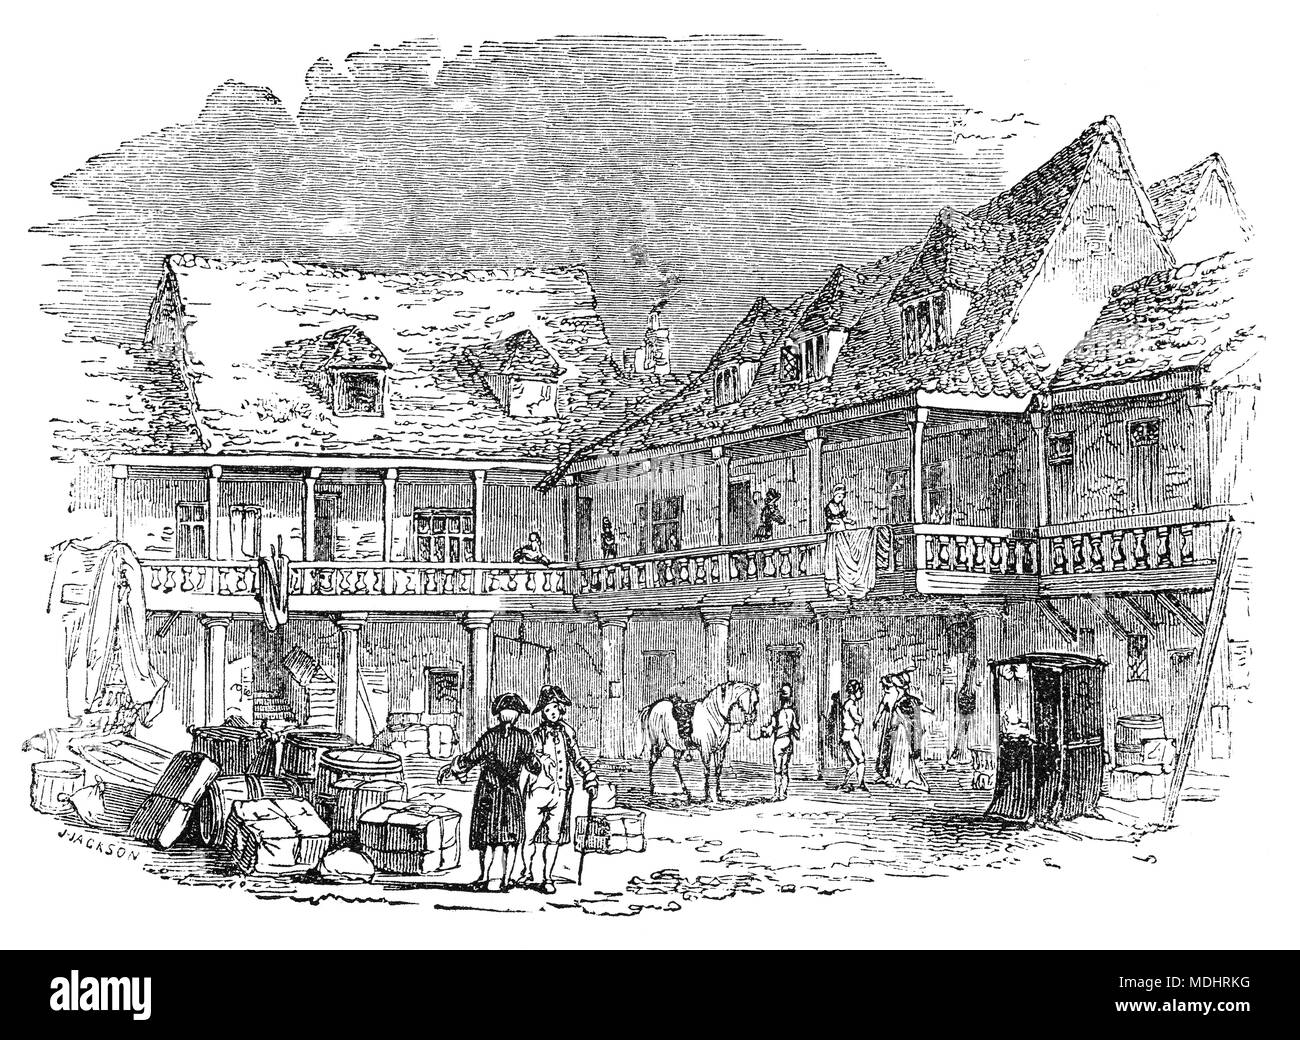 La cour de la Tabard, une auberge historique qui se trouvait sur le côté est de Borough High Street à Southwark. L'hôtellerie a été créé en 1307 et se trouvait sur l'ancienne artère principale qui conduit au sud de Londres. C'était l'endroit où les pèlerins s'est réuni pour la première fois sur leur voyage à Canterbury dans les années 1380 dans les Contes de Canterbury de Geoffrey Chaucer. Banque D'Images